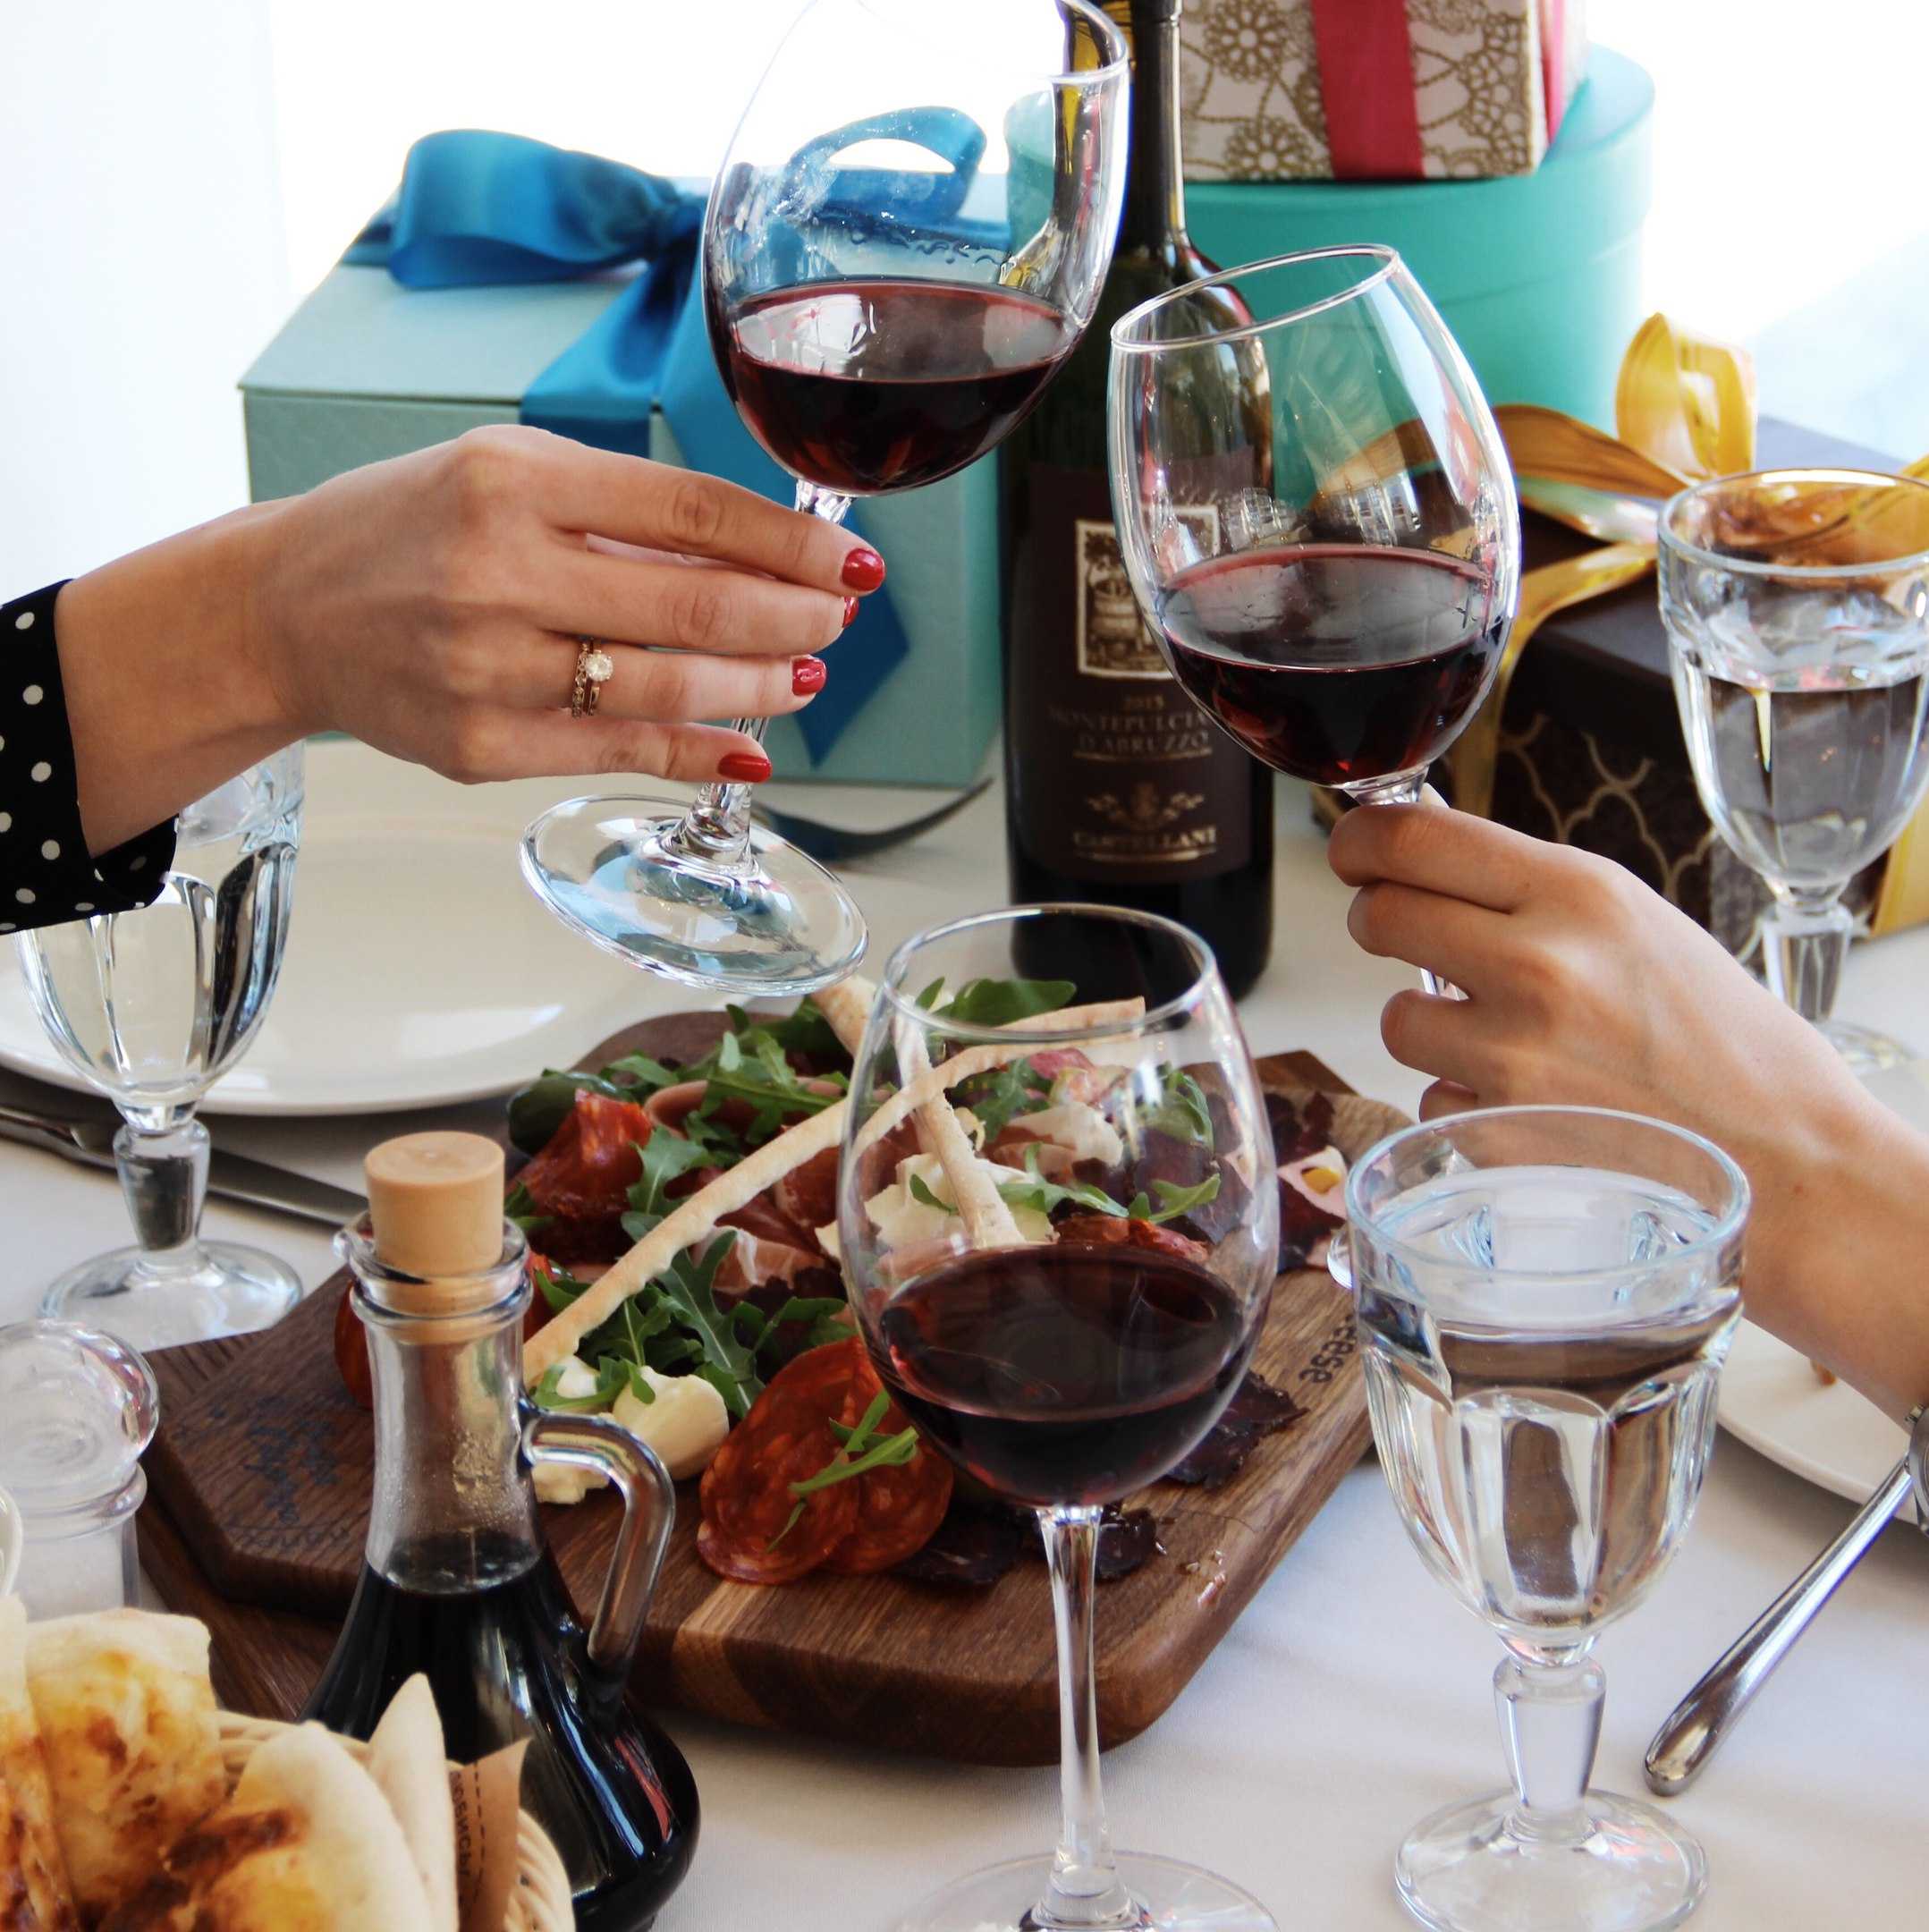 Вино на свадьбу, разбираемся в тонкостях сочетания вин и праздничных блюд